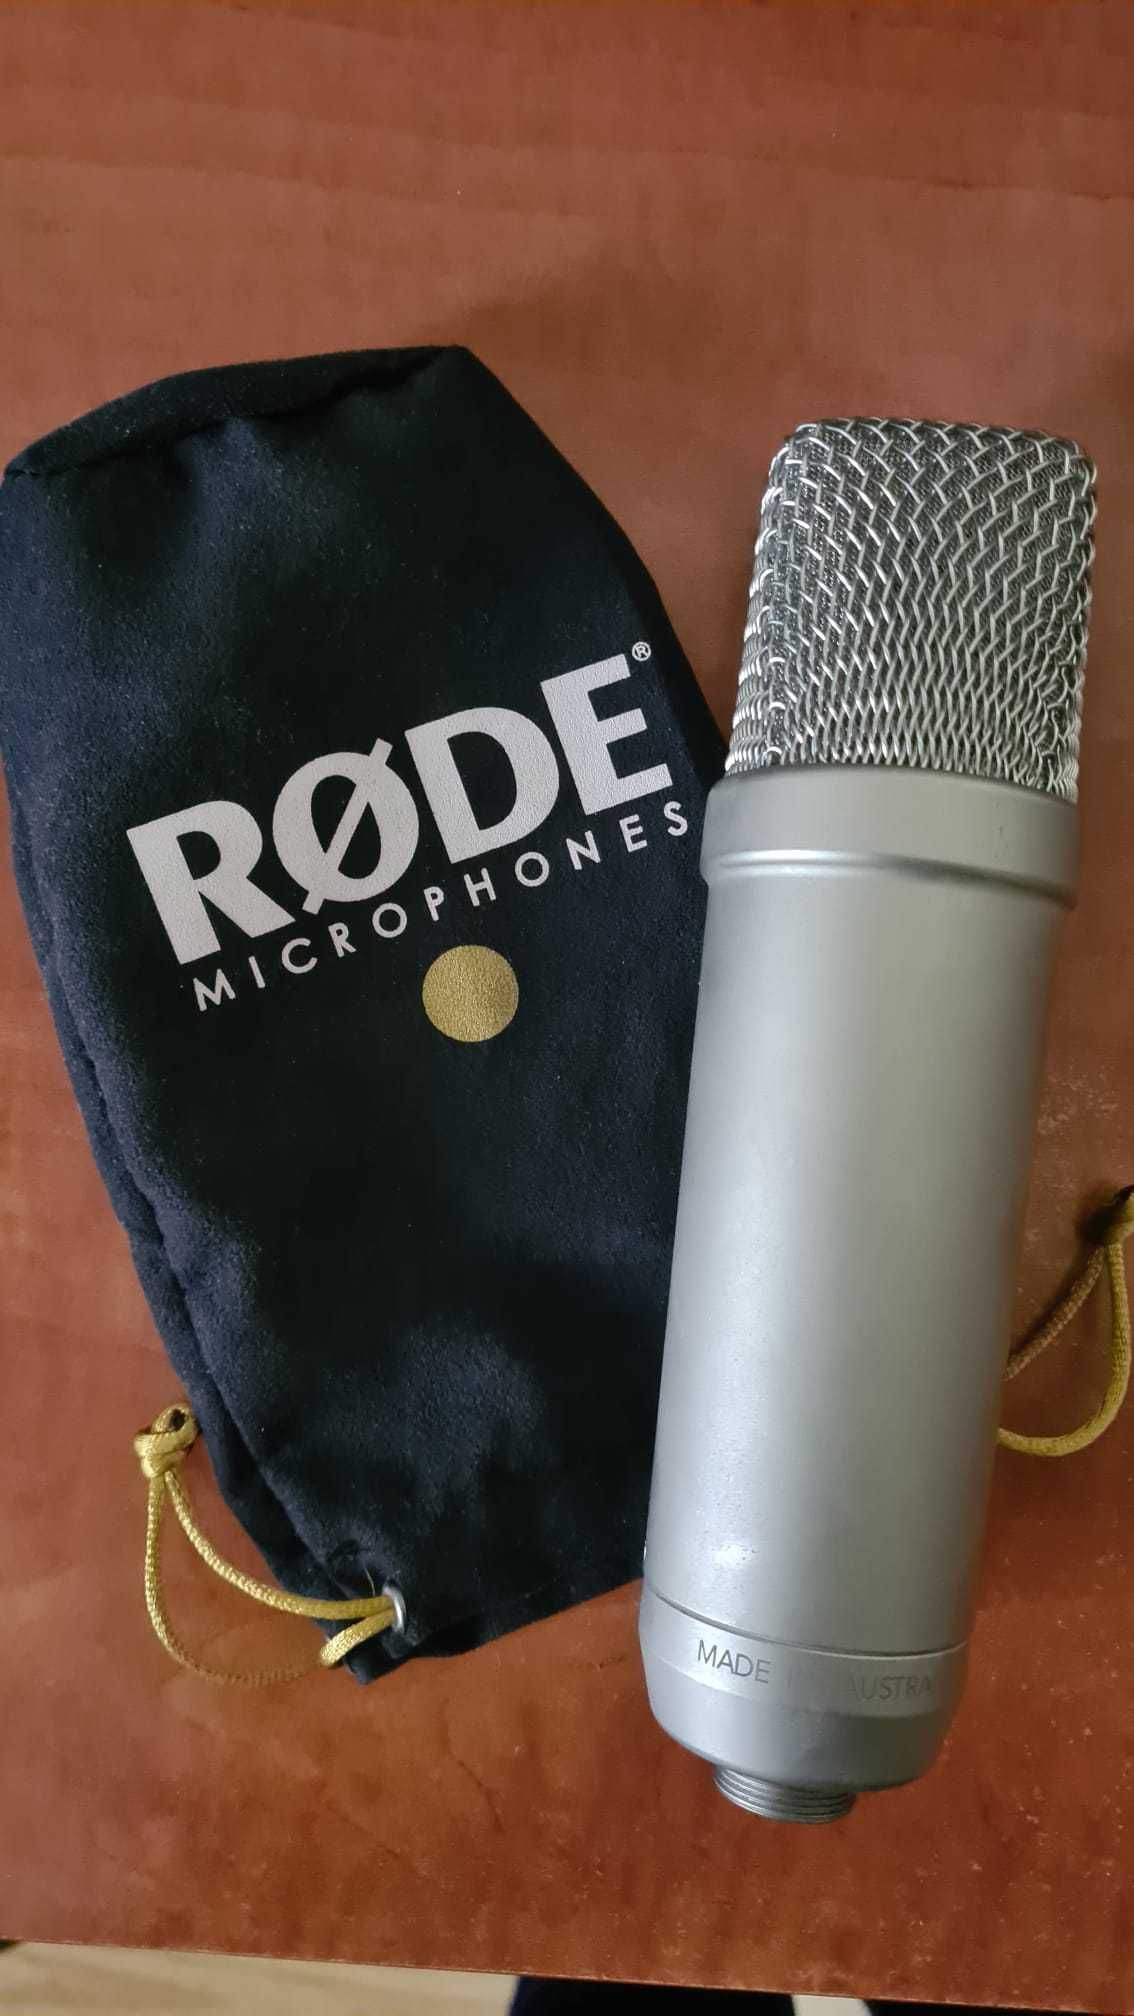 Microfone Estúdio NT1-A Bundle Rode